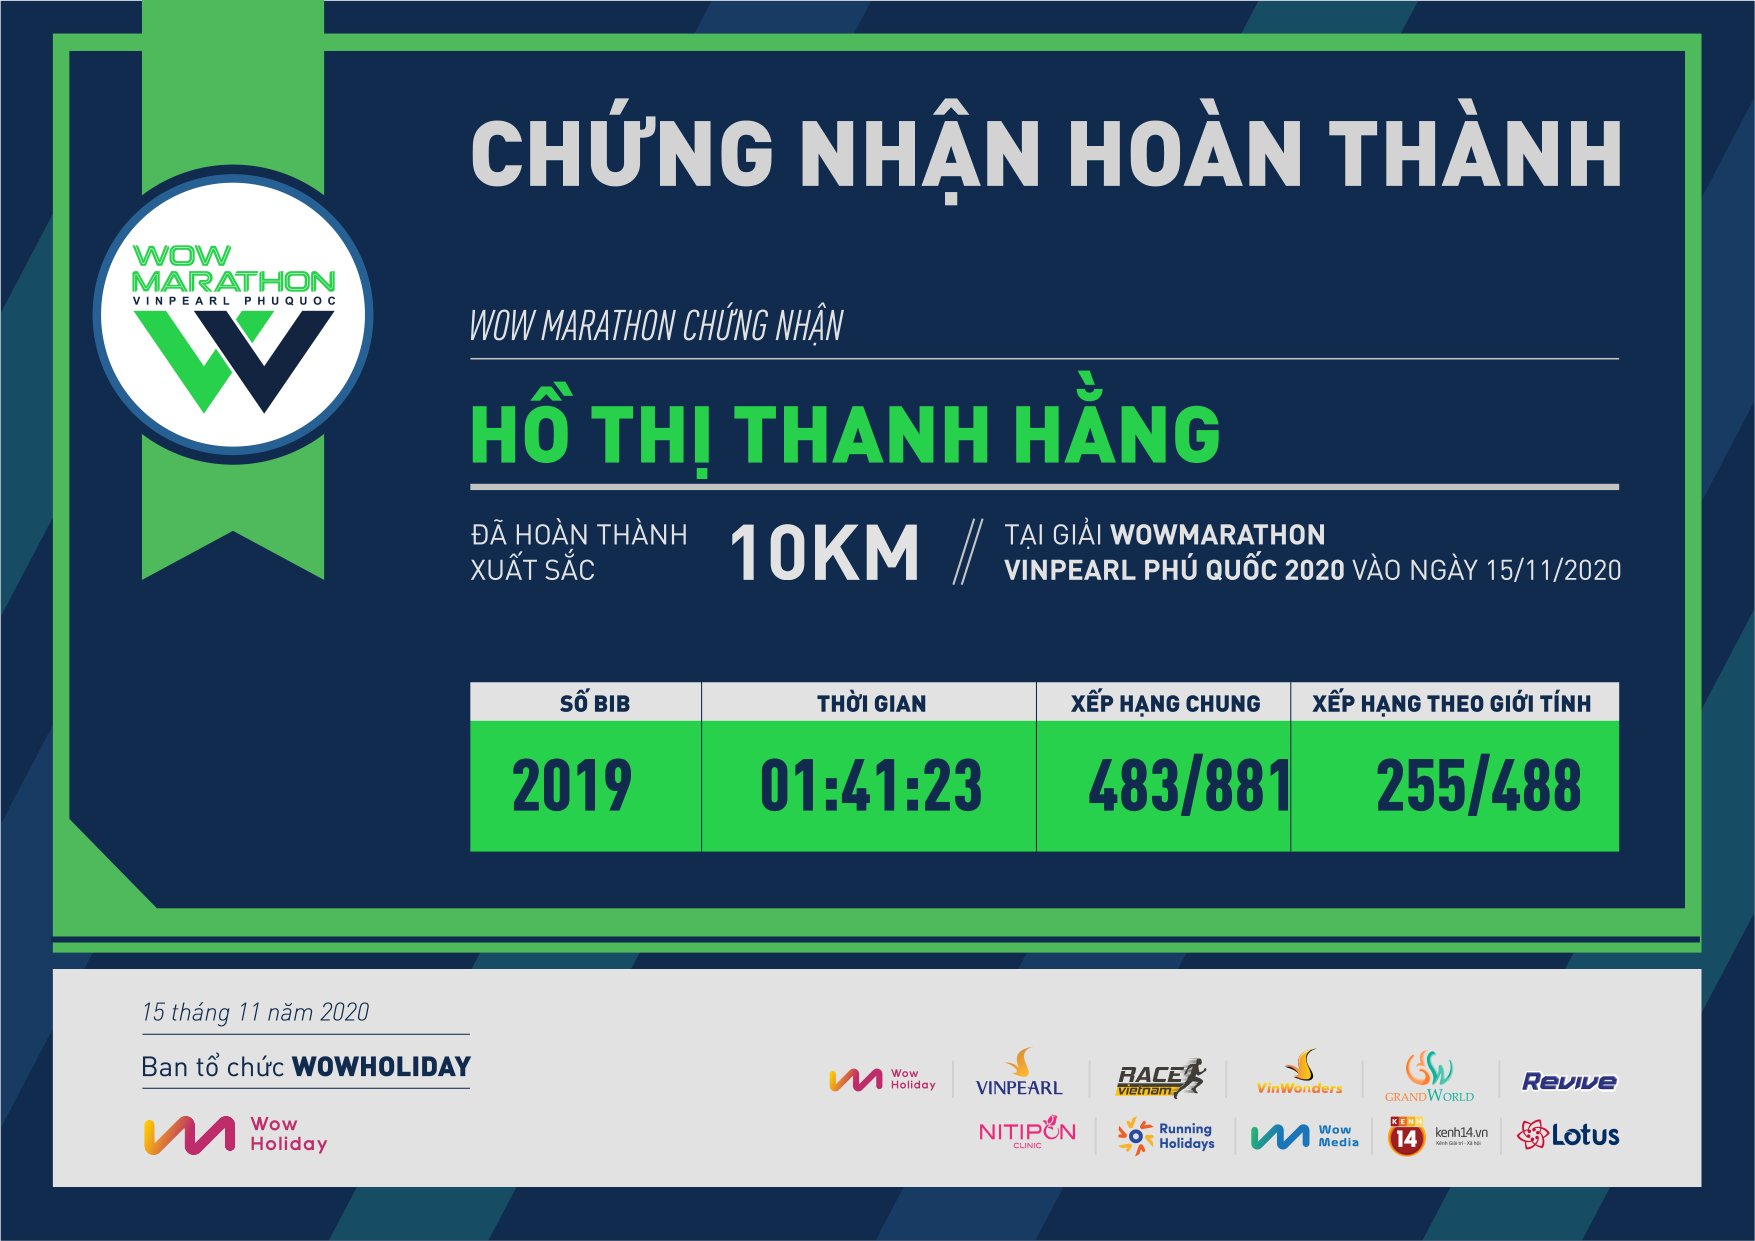 2019 - Hồ Thị Thanh Hằng